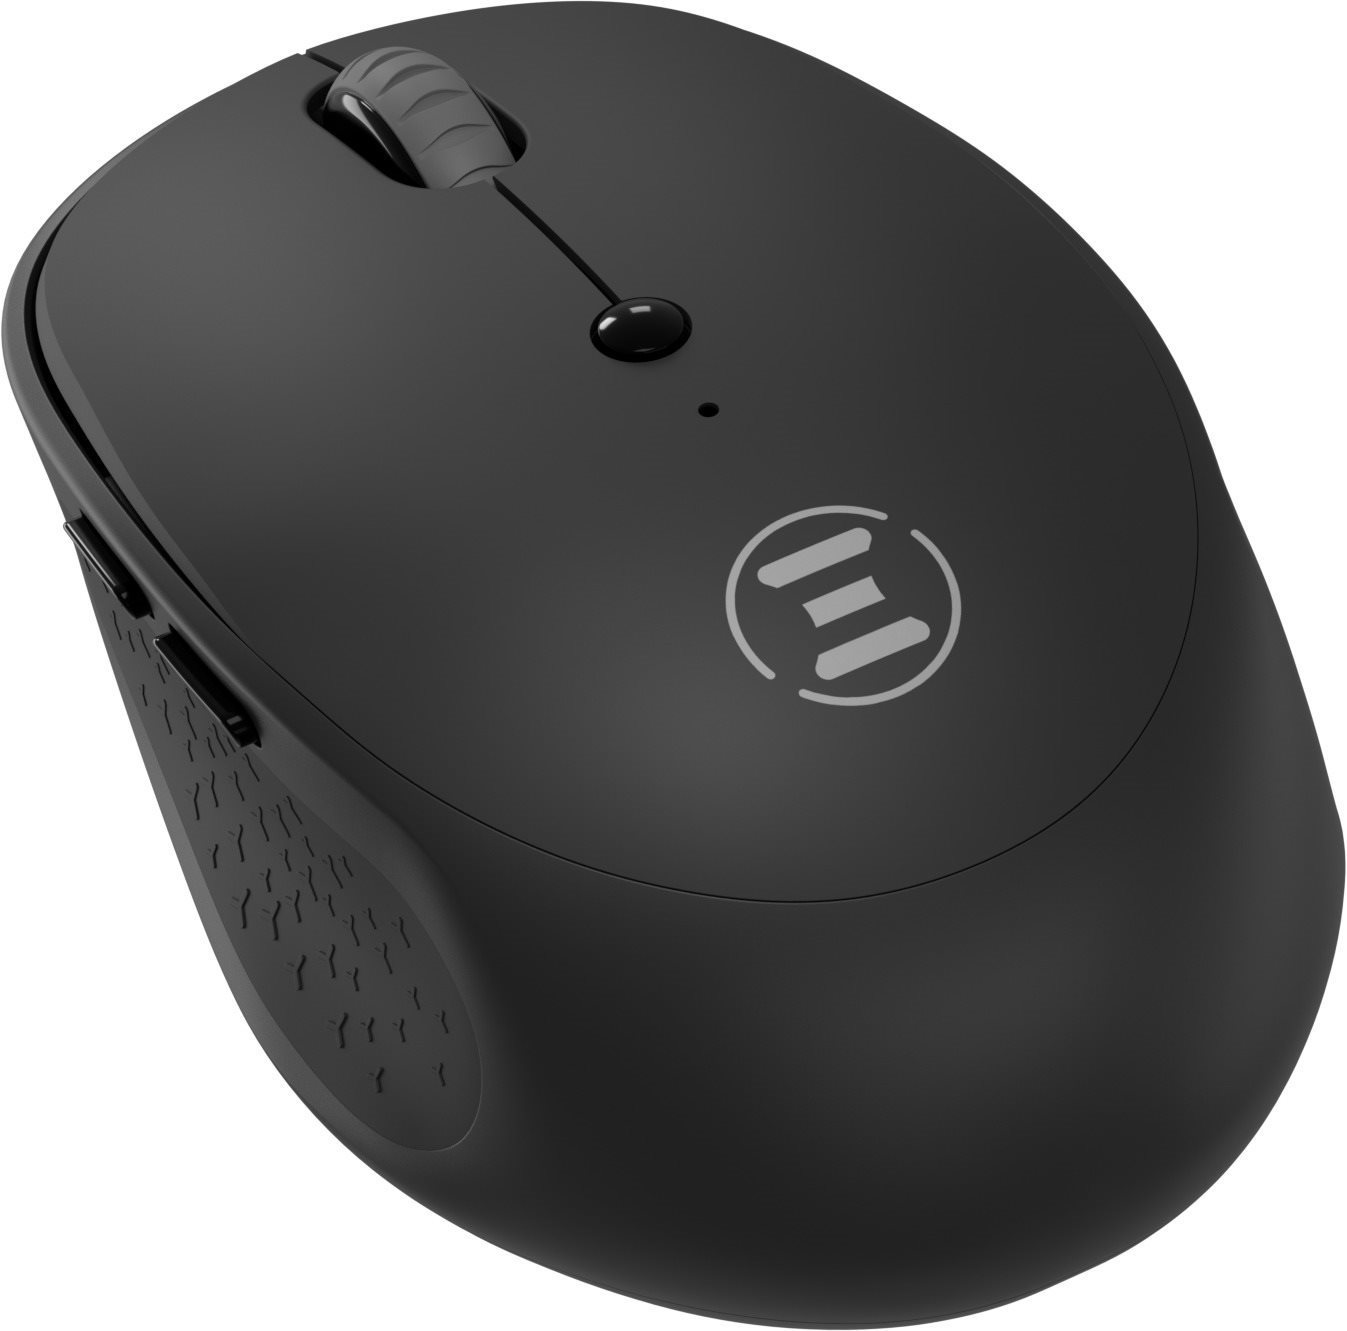 Egér Eternico Wireless 2.4 GHz & Double Bluetooh Mouse MS330 fekete